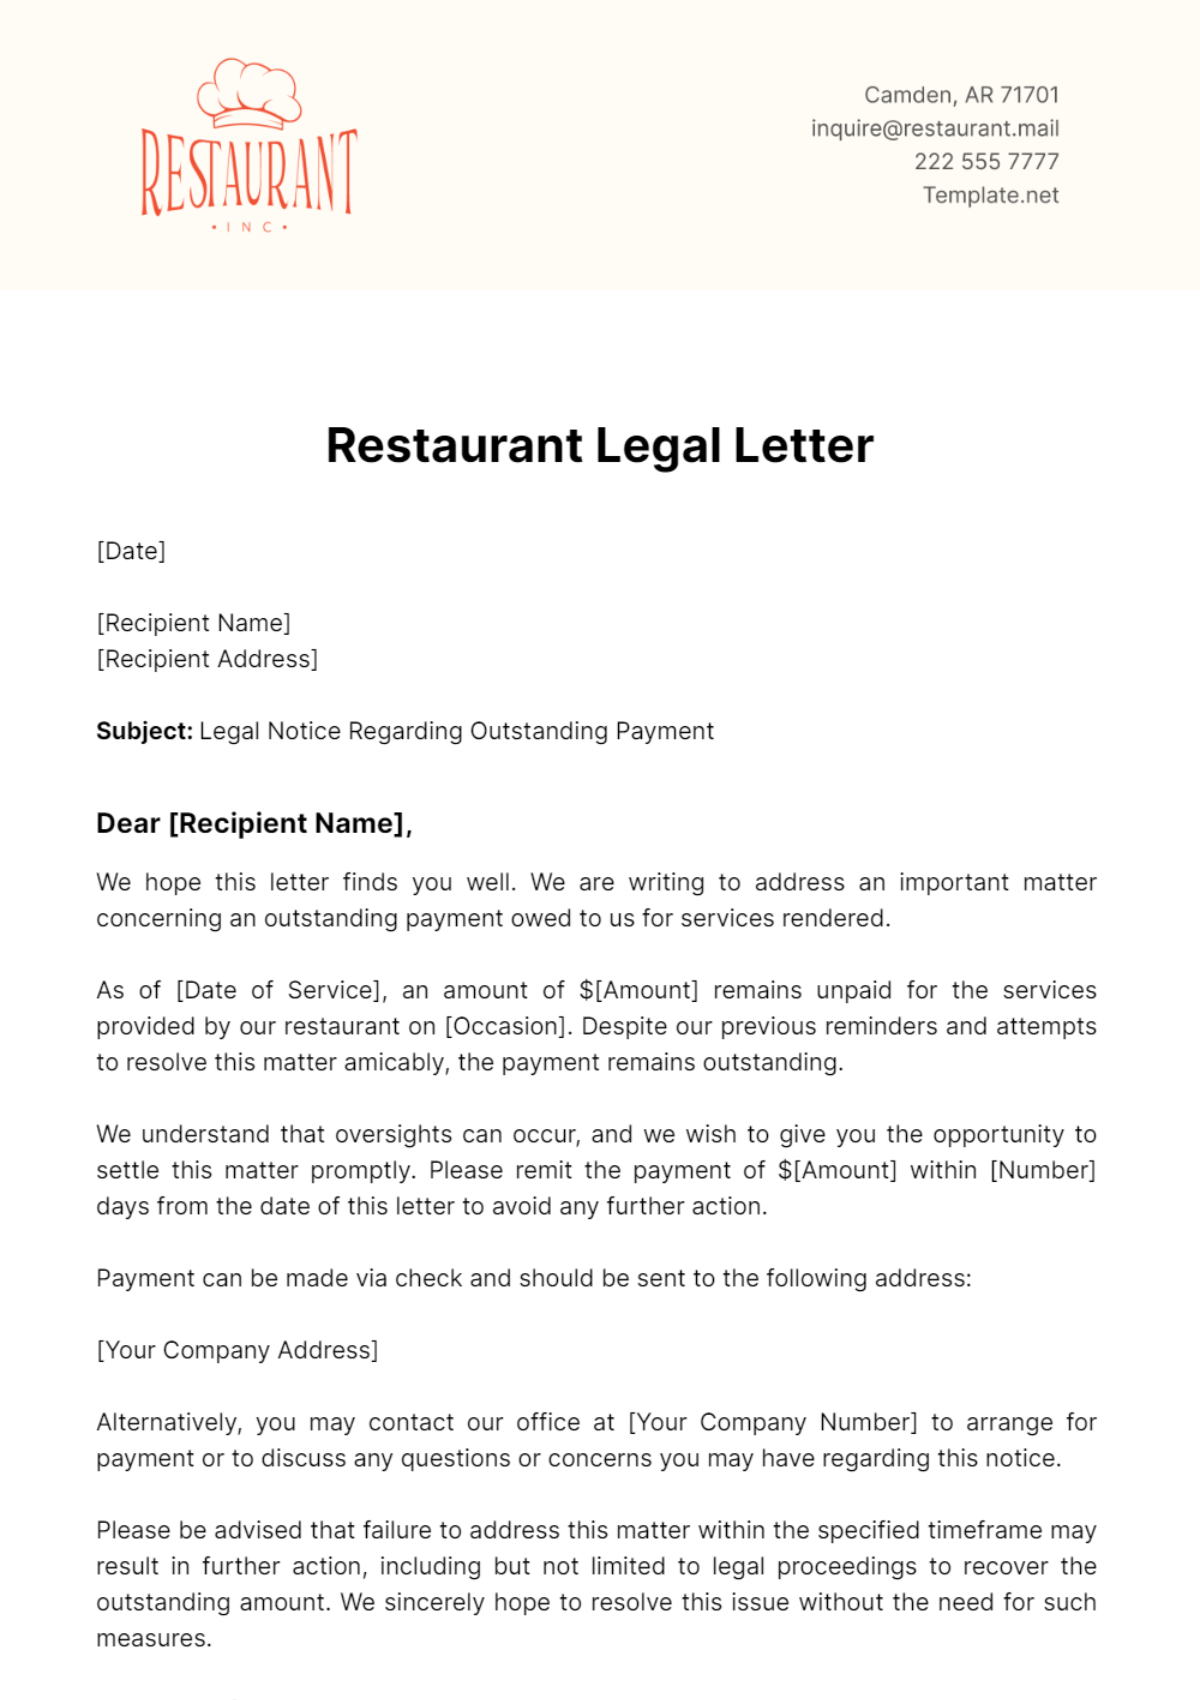 Restaurant Legal Letter Template